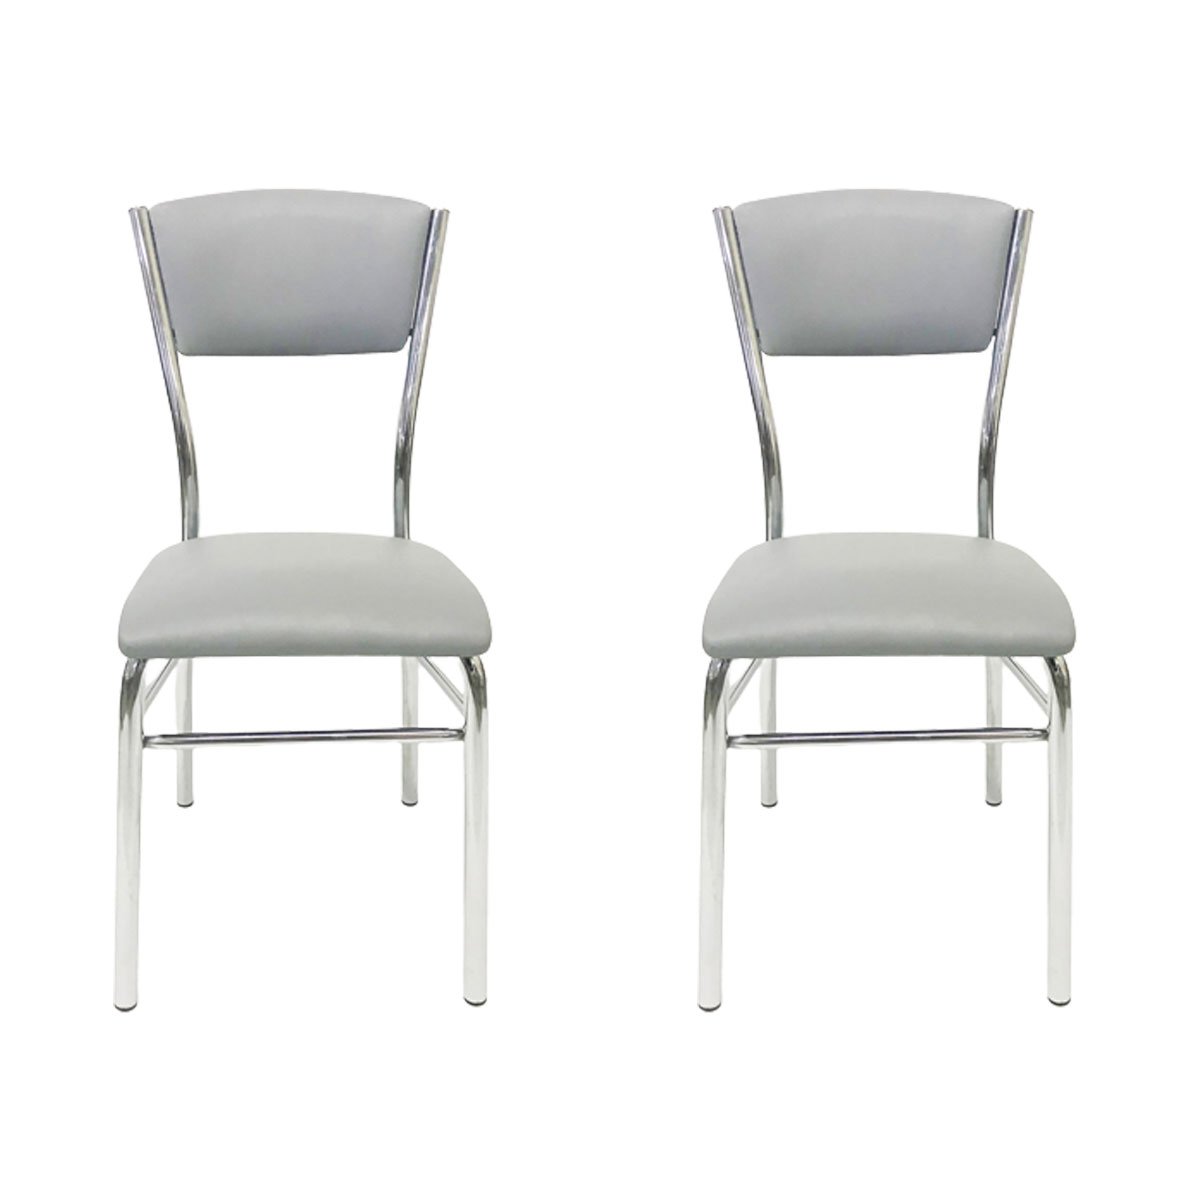 Kit 2 Cadeiras de Cozinha com Reforço Cromada Assento e Encosto Cinza - Poltronas do Sul - 1